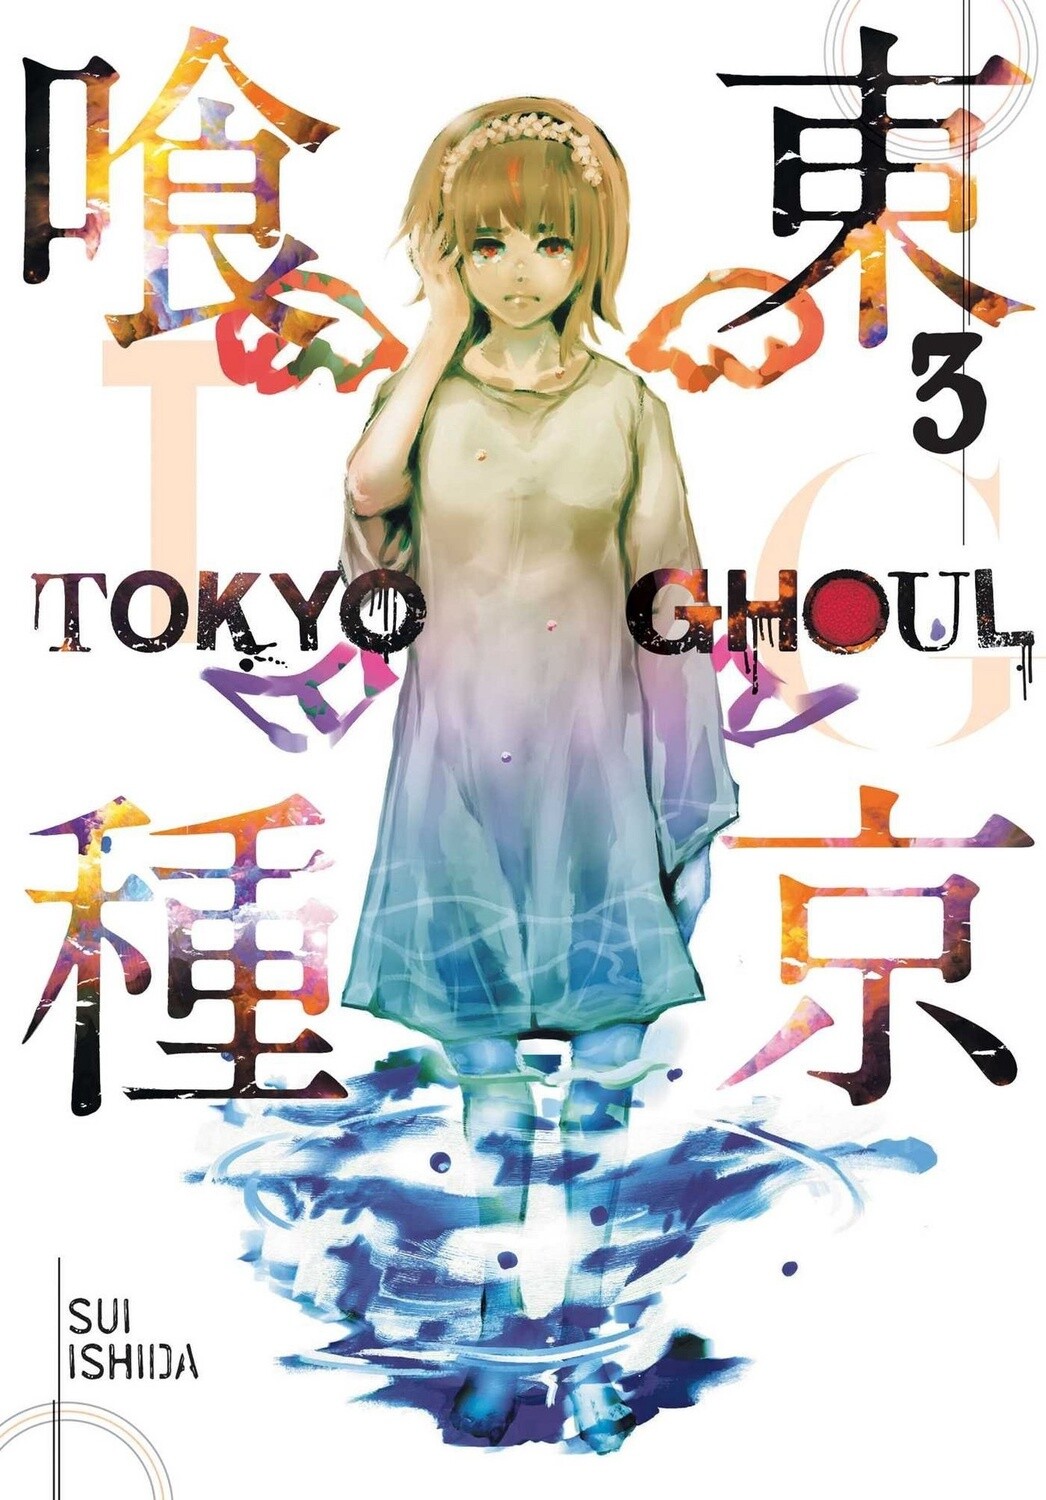 Tokyo Ghoul Vol. 3